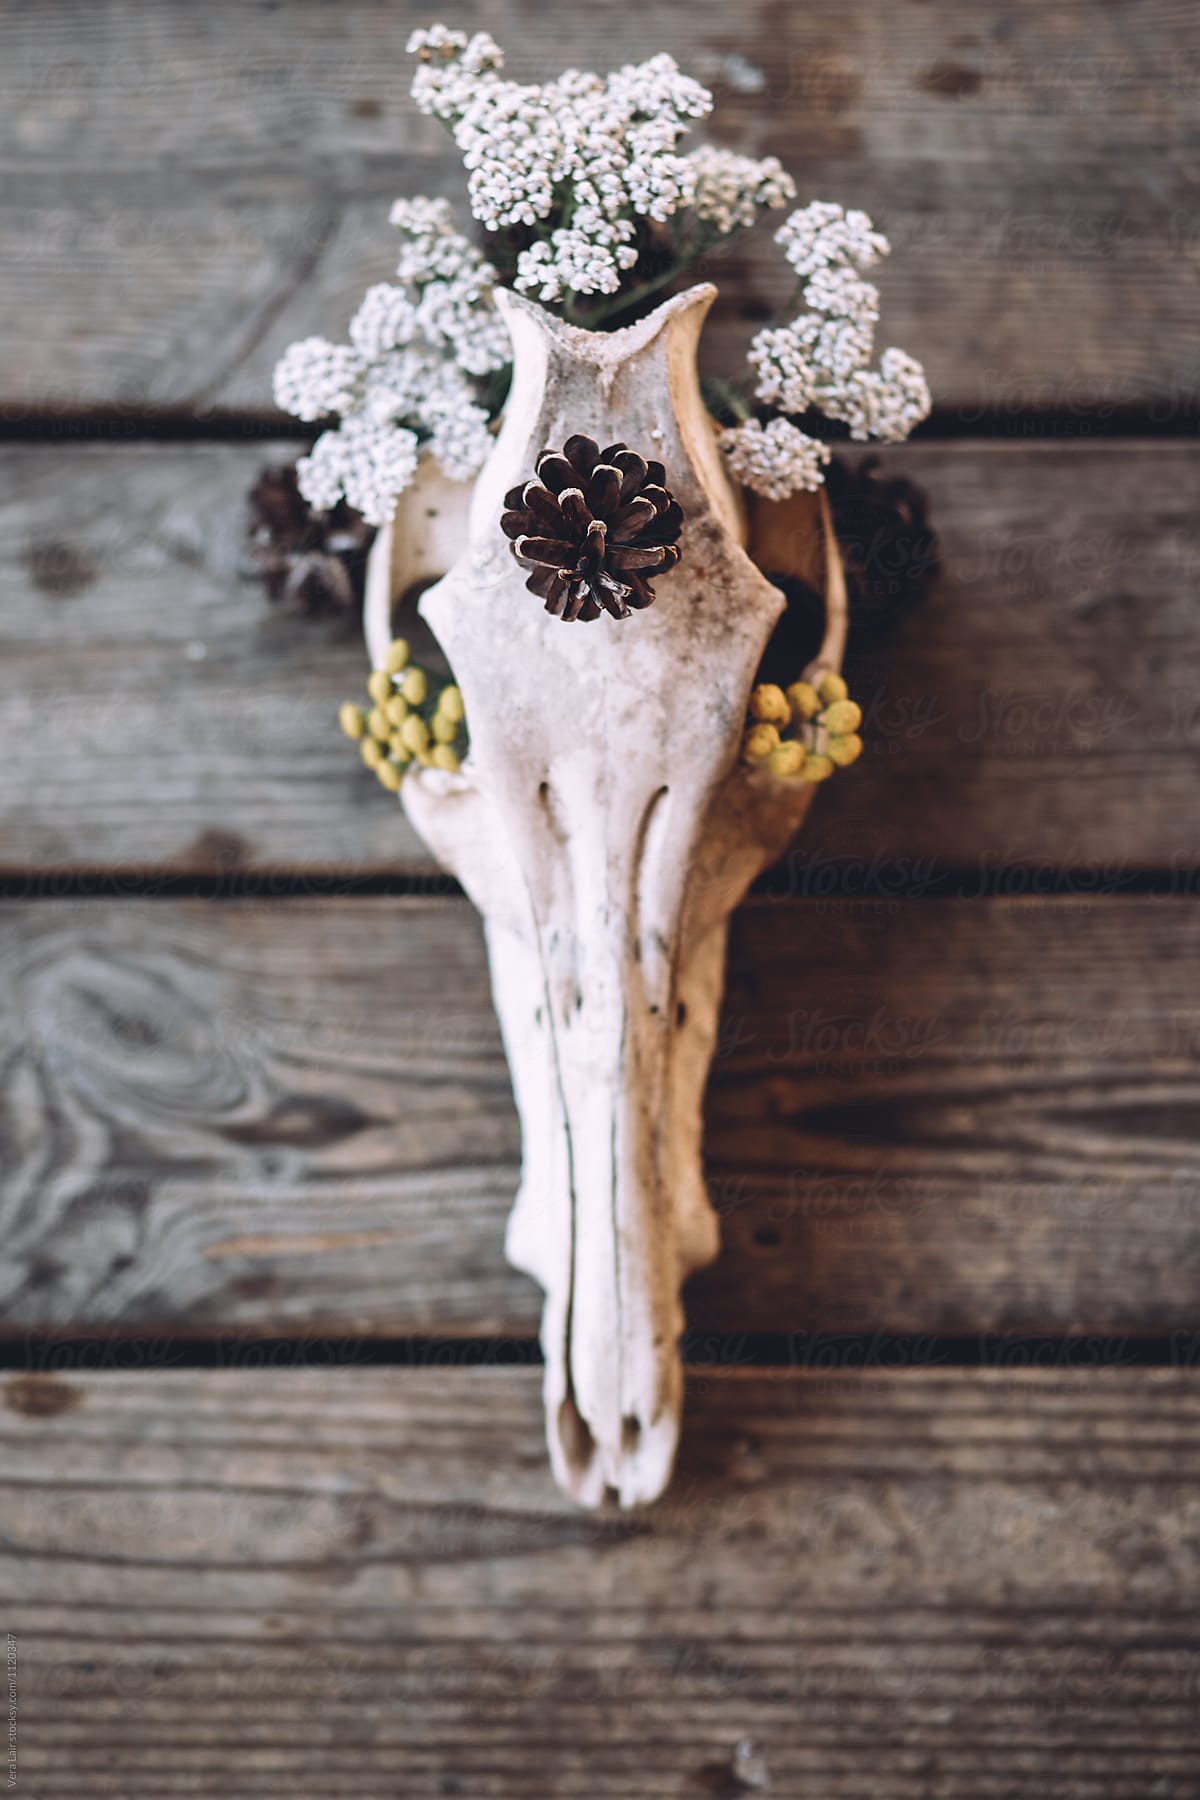 Still life of decorated skull